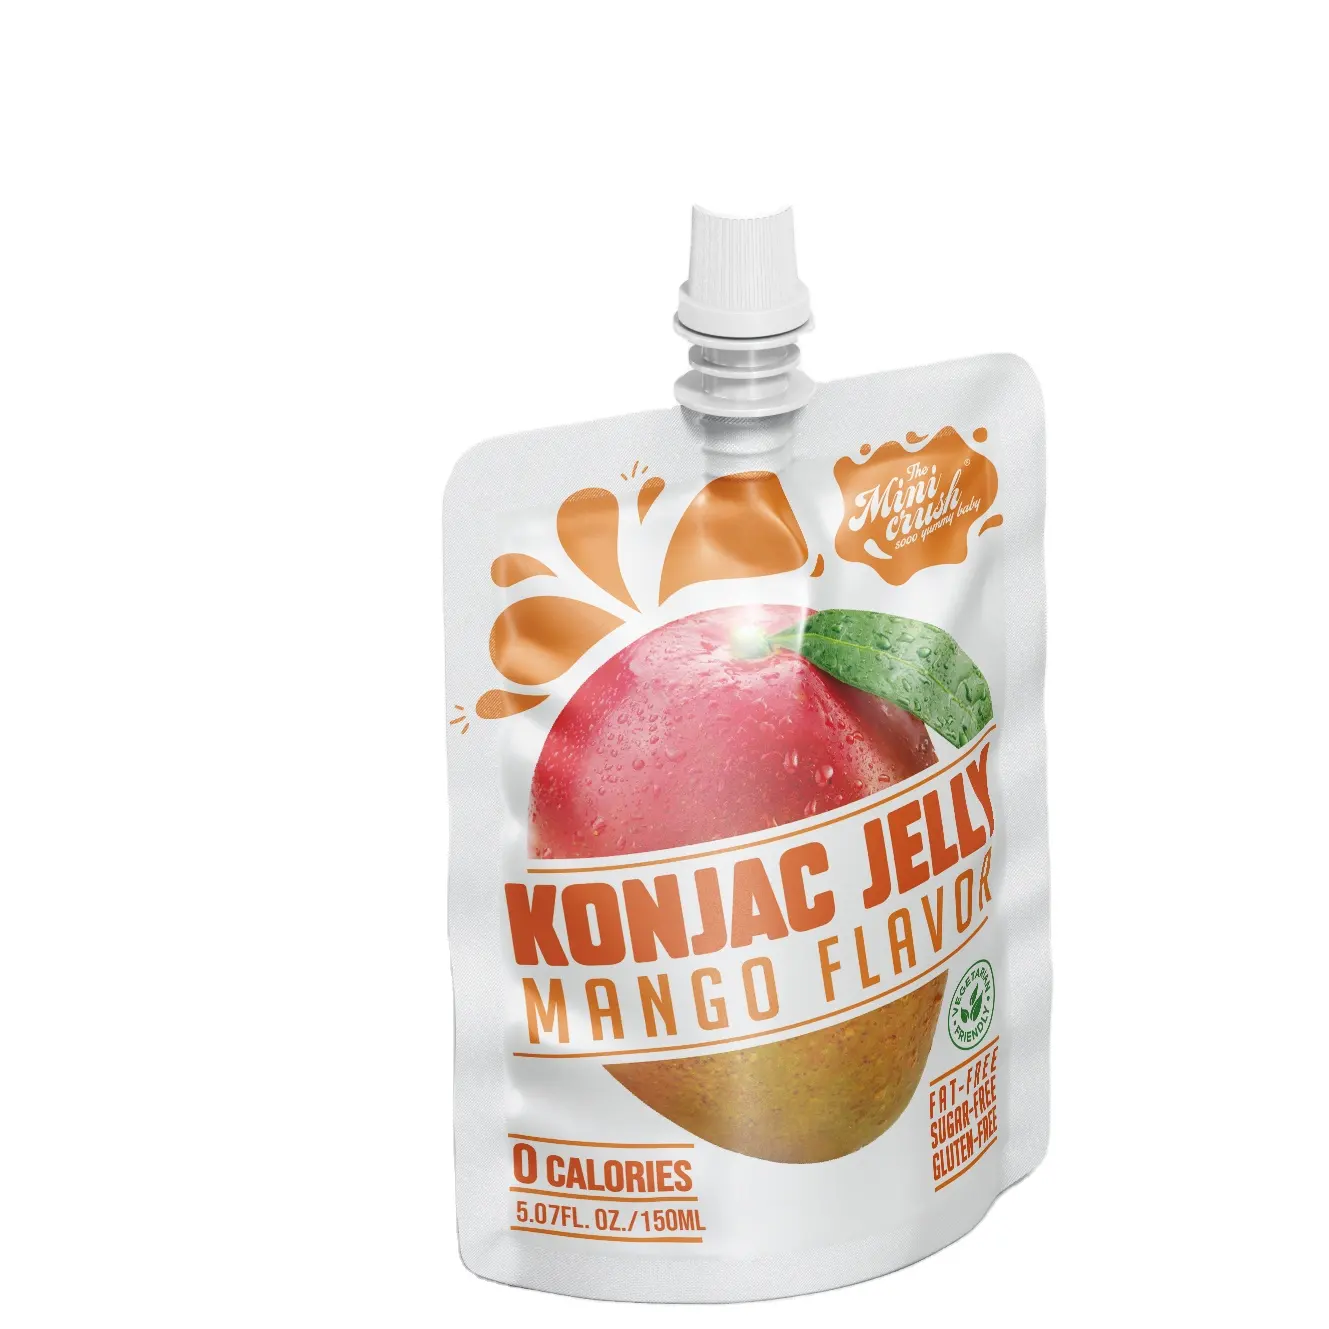 Konjac jelly drink integratore dietetico per la perdita di peso sano e naturale alimenti senza zucchero sapore di mango gelatina di konjac snack a basso contenuto calorico